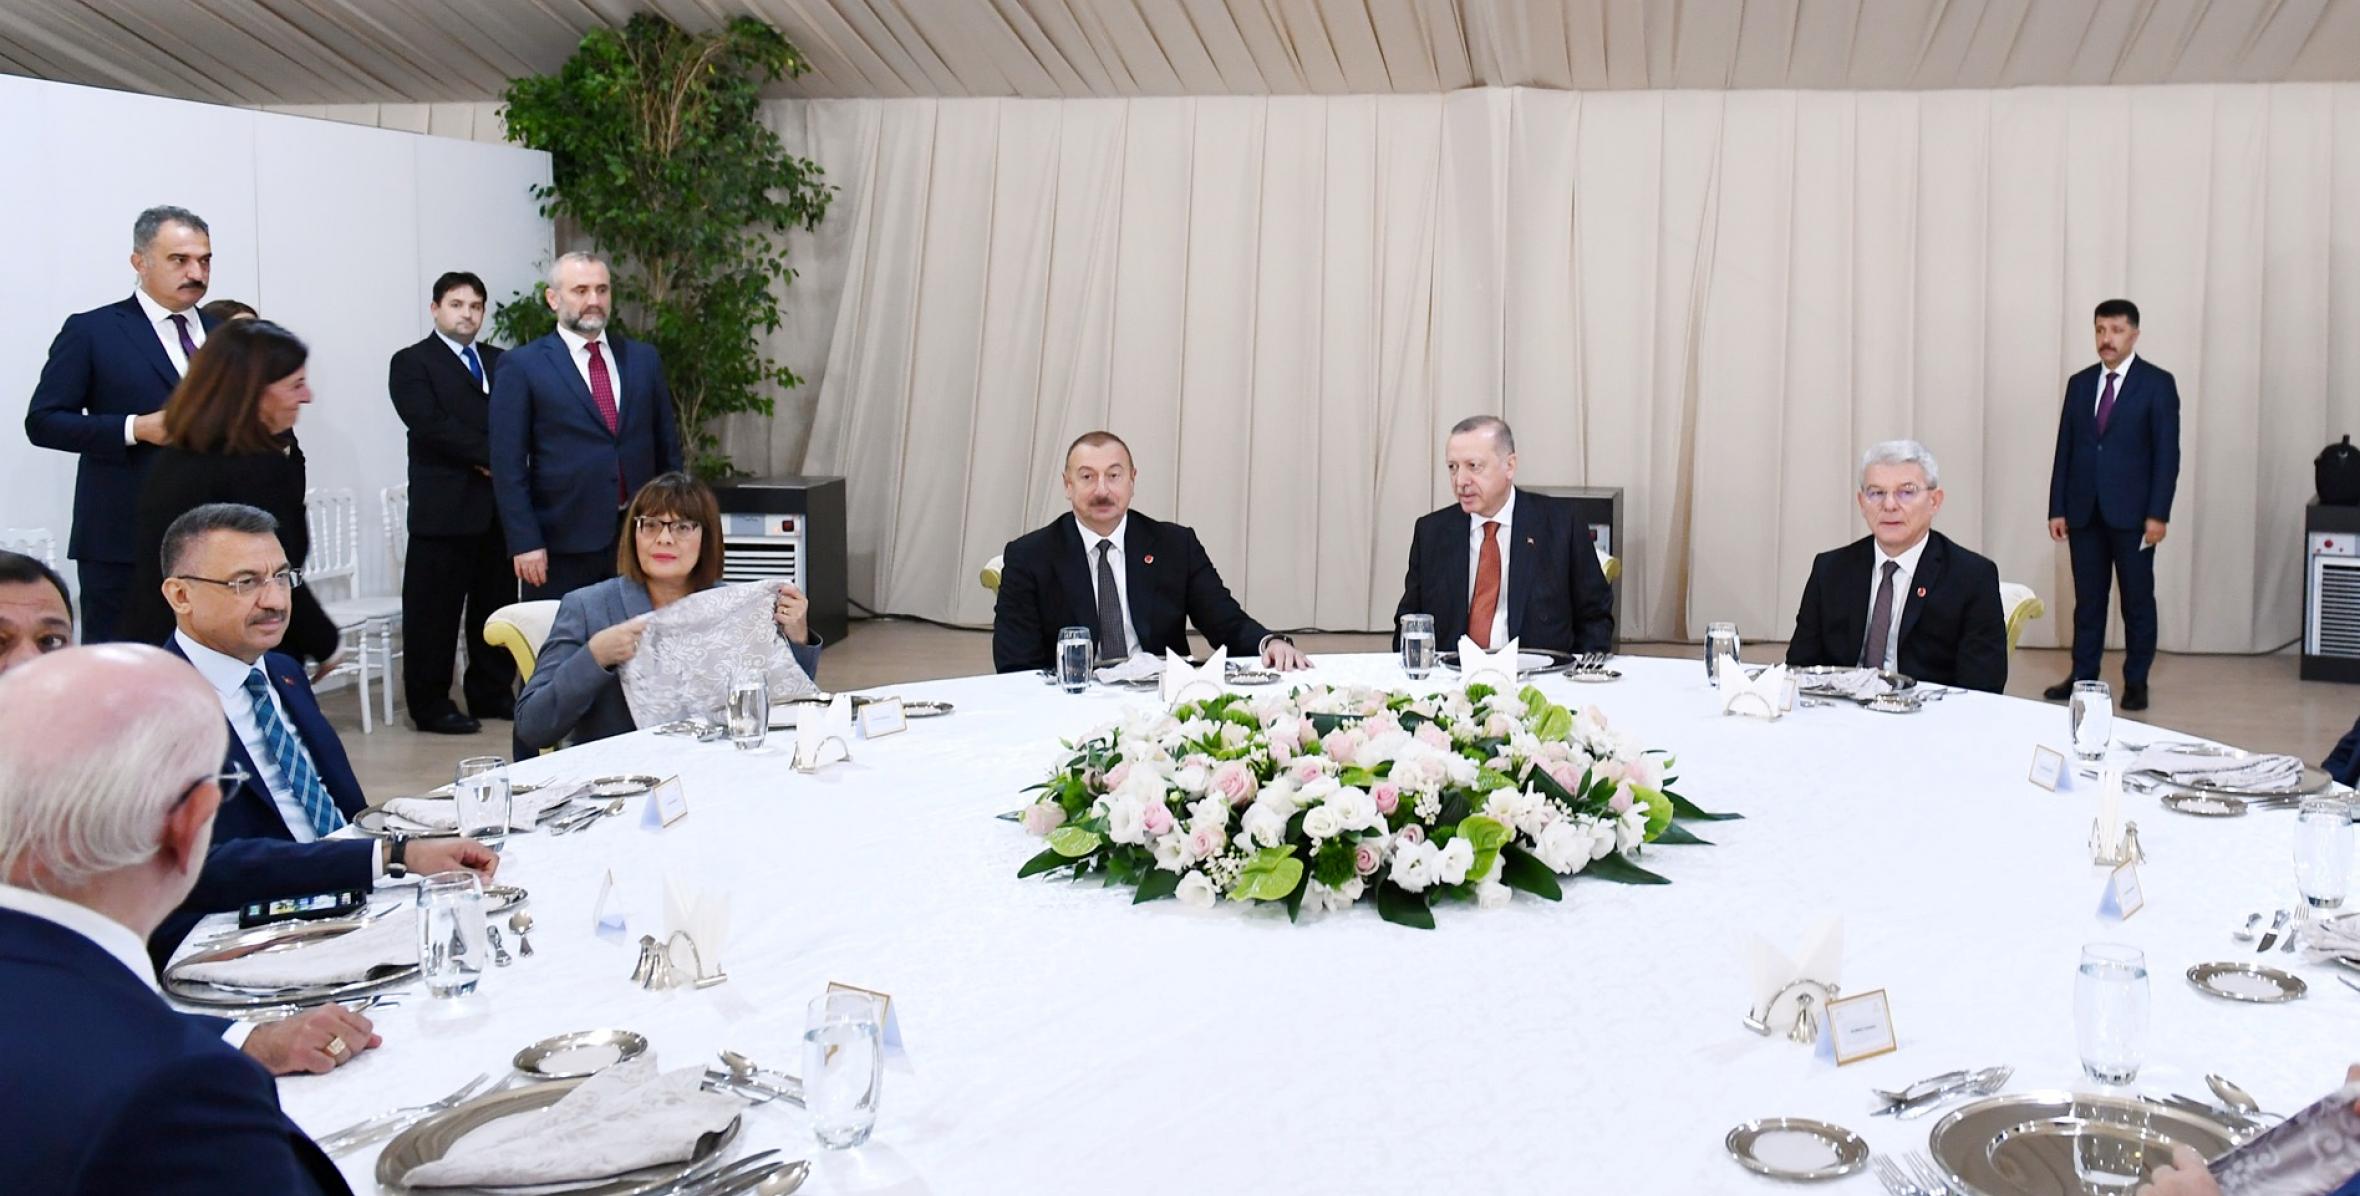 Ильхам Алиев принял участие в приеме в честь участников церемонии открытия части TANAP, которая будет соединена с Европой